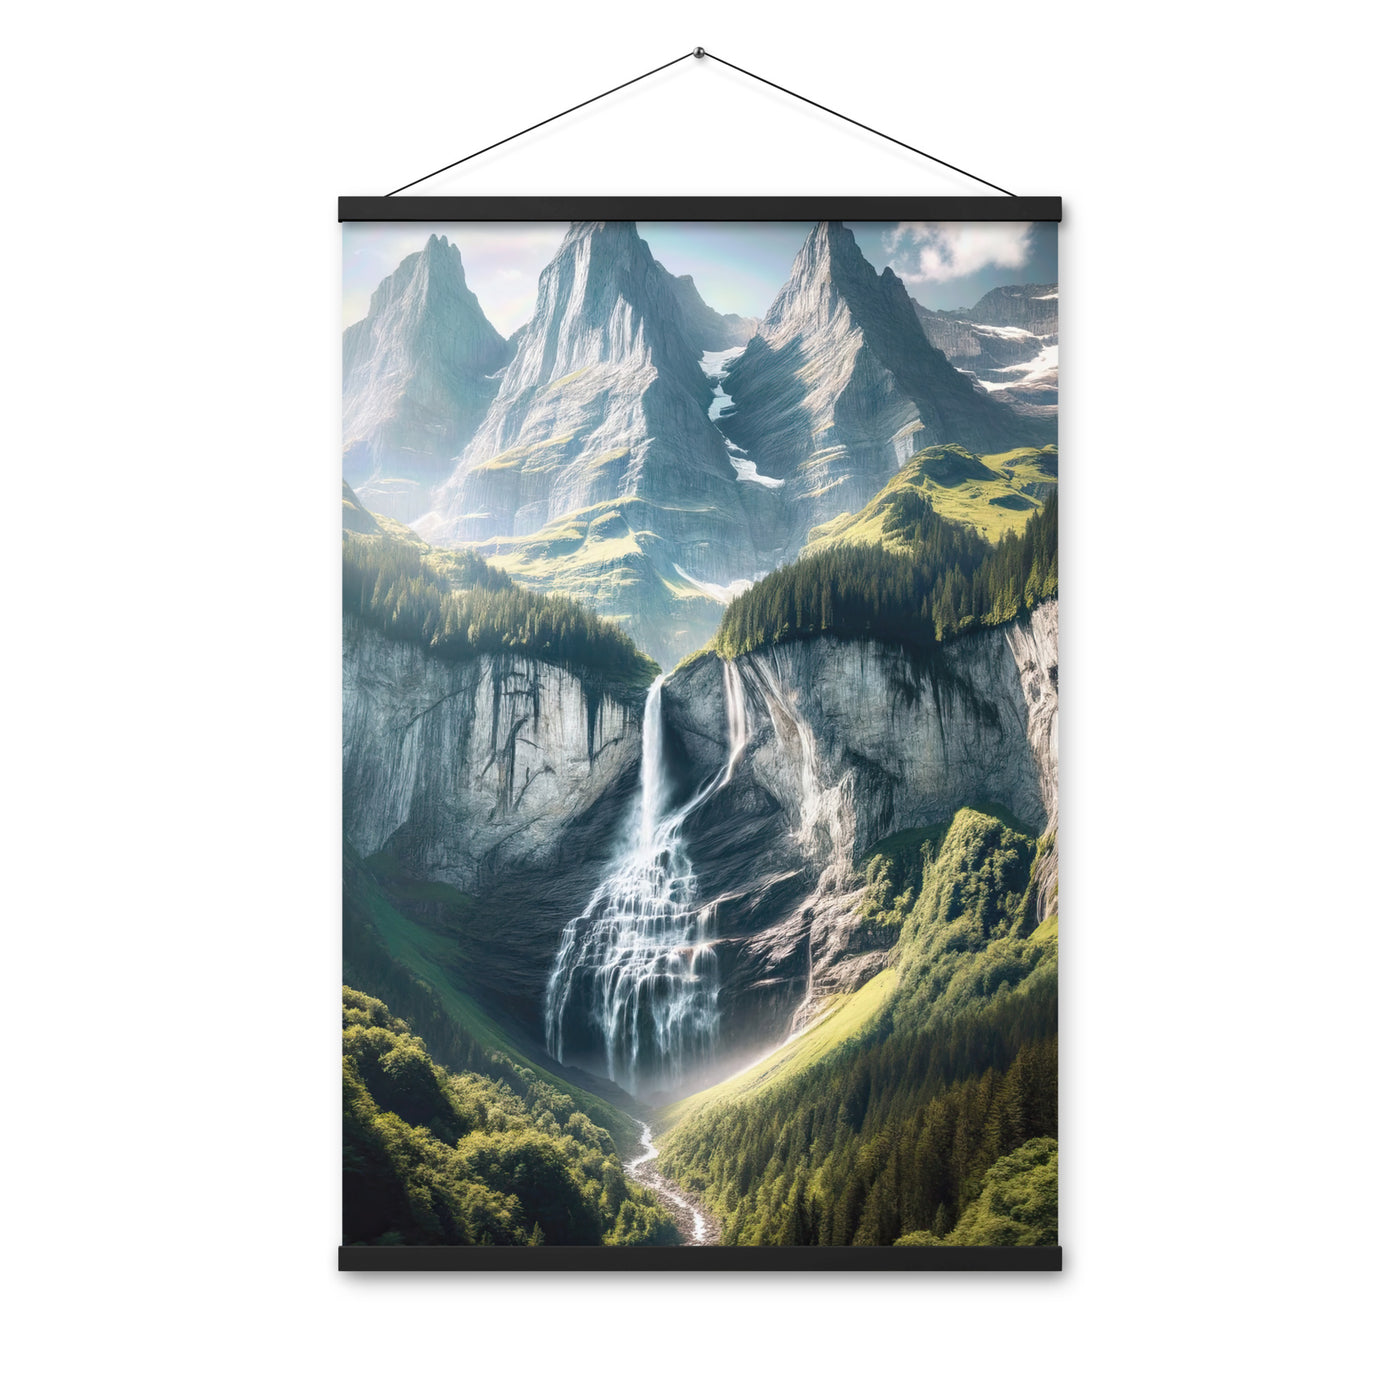 Foto der sommerlichen Alpen mit üppigen Gipfeln und Wasserfall - Premium Poster mit Aufhängung berge xxx yyy zzz 61 x 91.4 cm